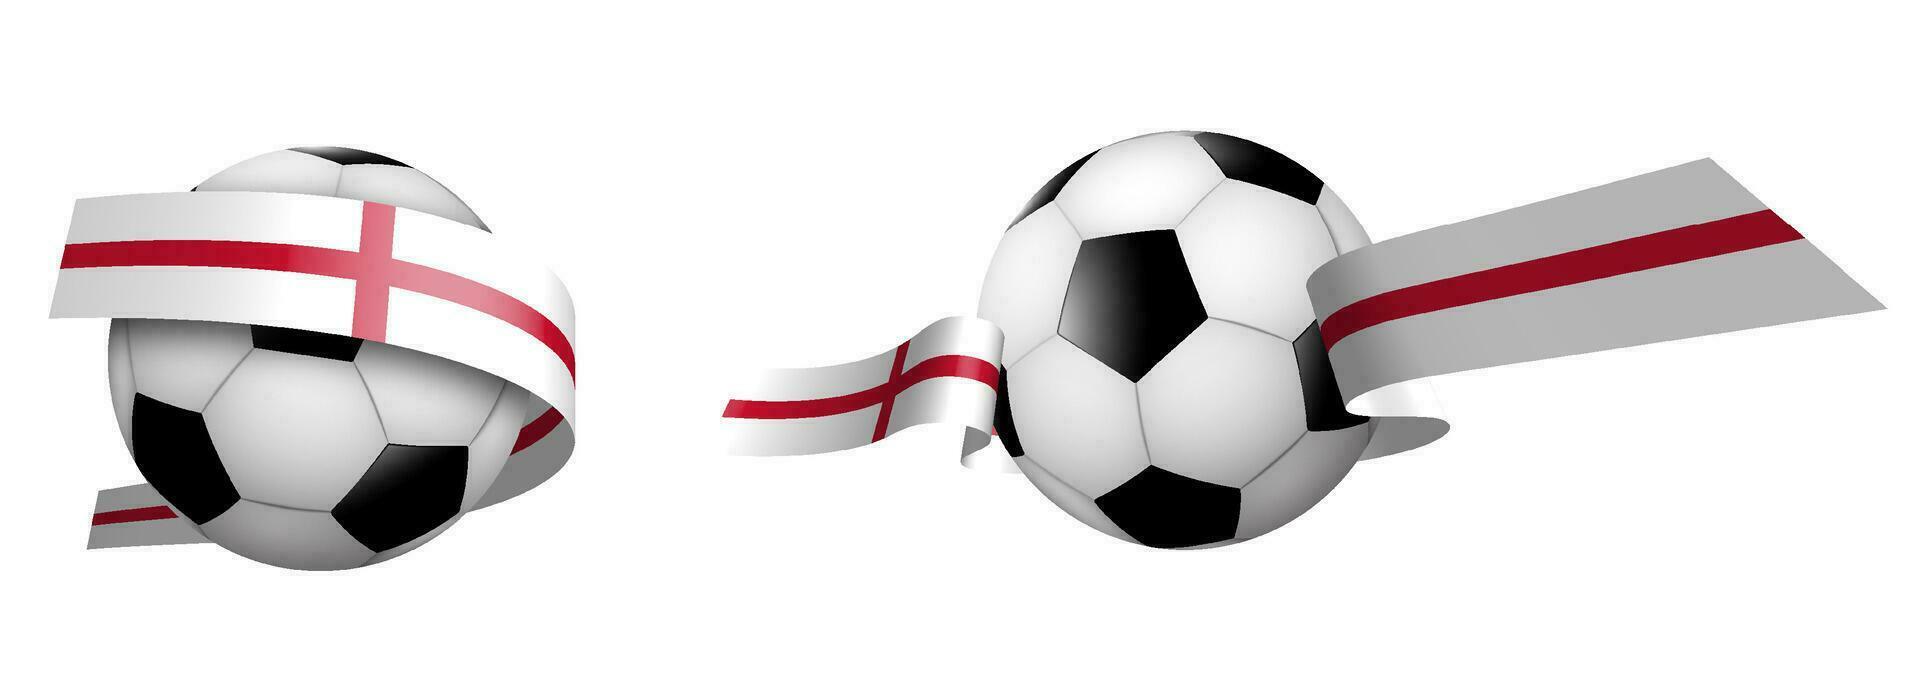 pelotas para fútbol, clásico fútbol americano en cintas con colores de Inglés bandera. diseño elemento para fútbol americano competiciones Inglés nacional equipo. aislado vector en blanco antecedentes